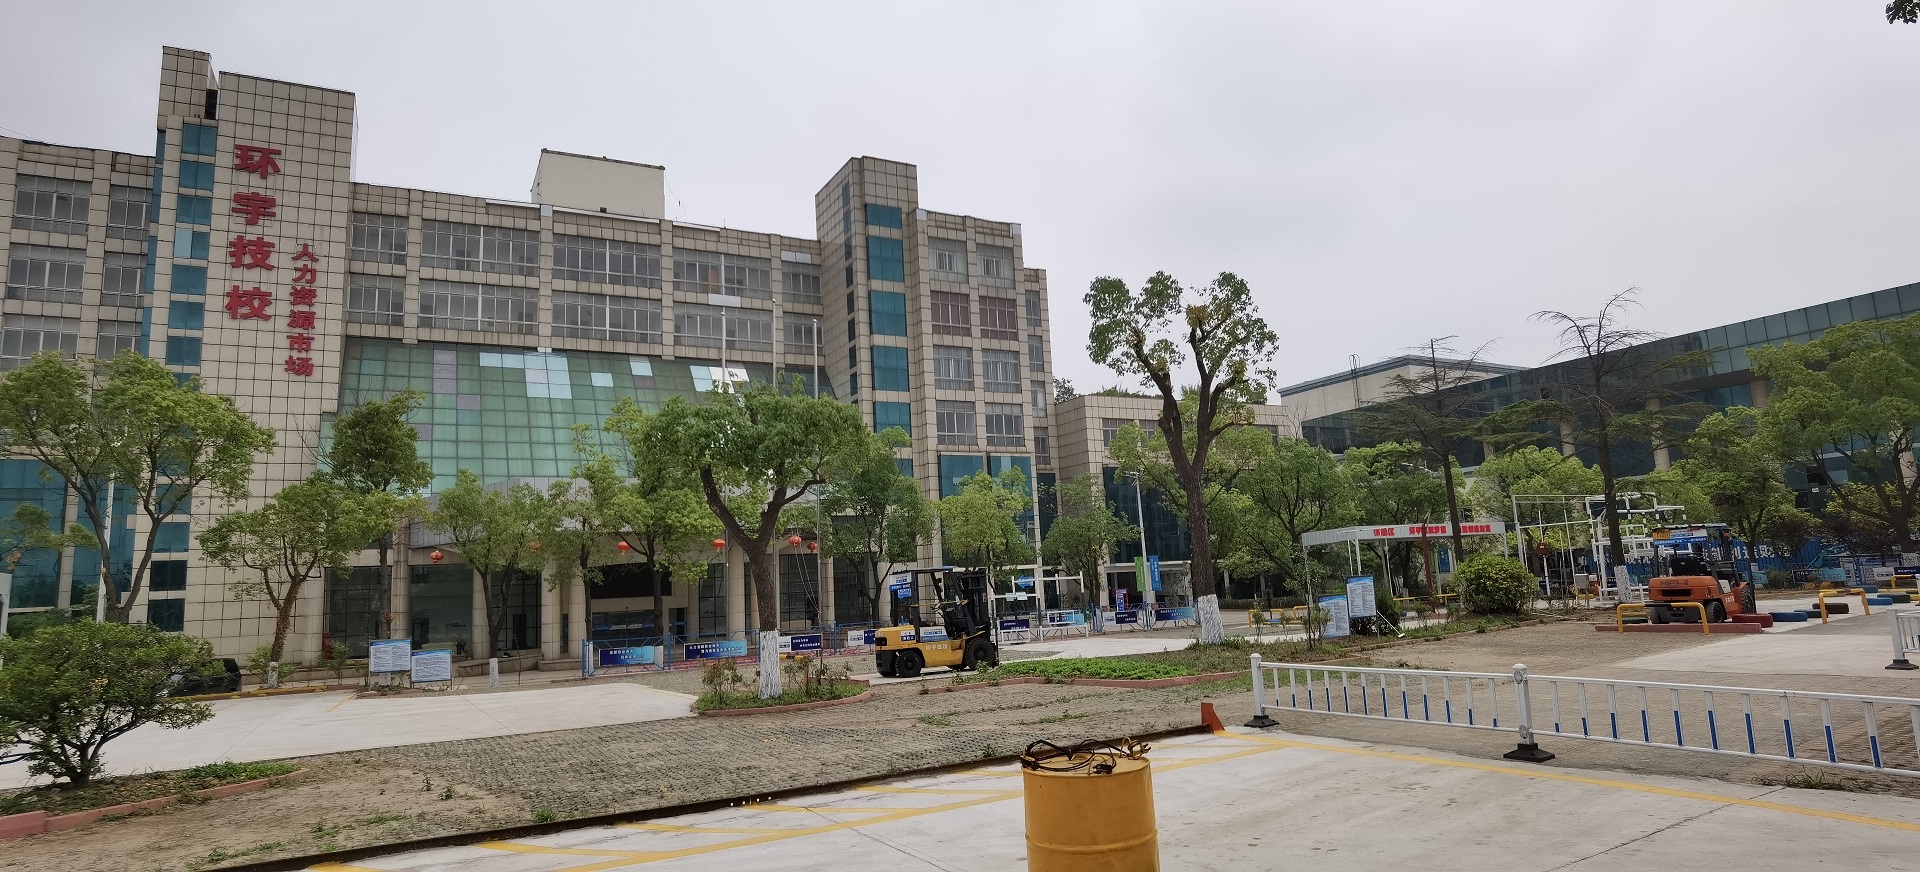 环宇技校（锦丰校区）新校区搬迁到  张家港市锦丰镇建设路2号  正式投入运营